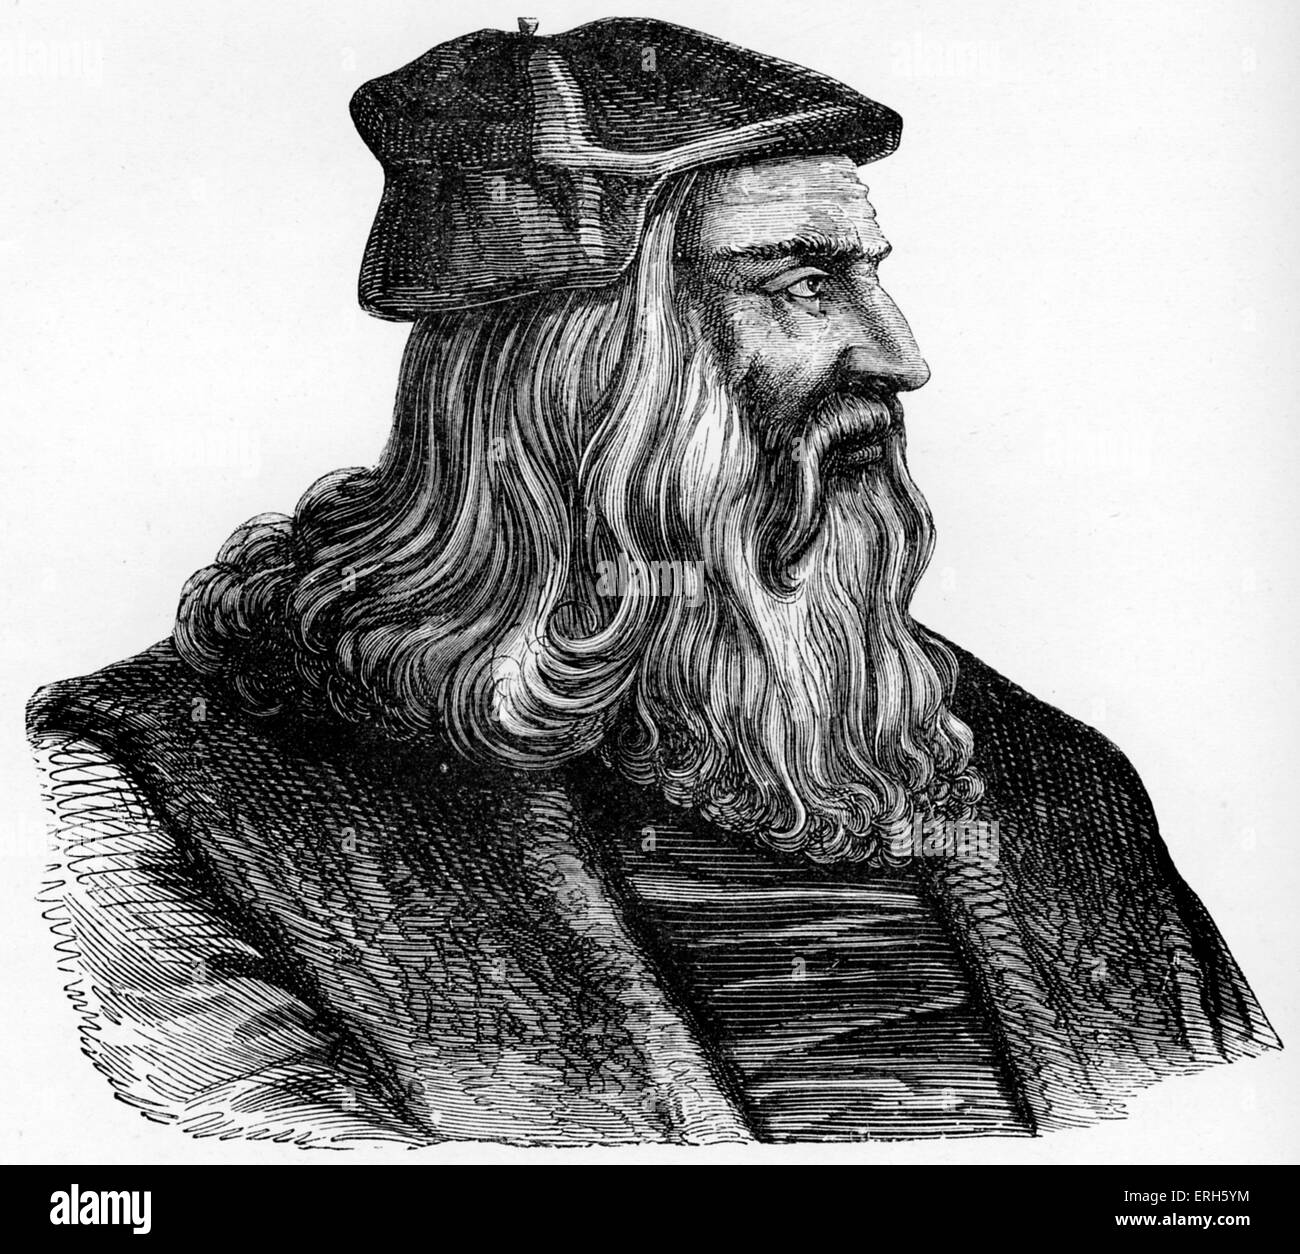 Leonardo da Vinci - italienische Renaissance Maler, Bildhauer, Schriftsteller, Wissenschaftler, Architekten und Ingenieur. Venezianische Gravur Stockfoto